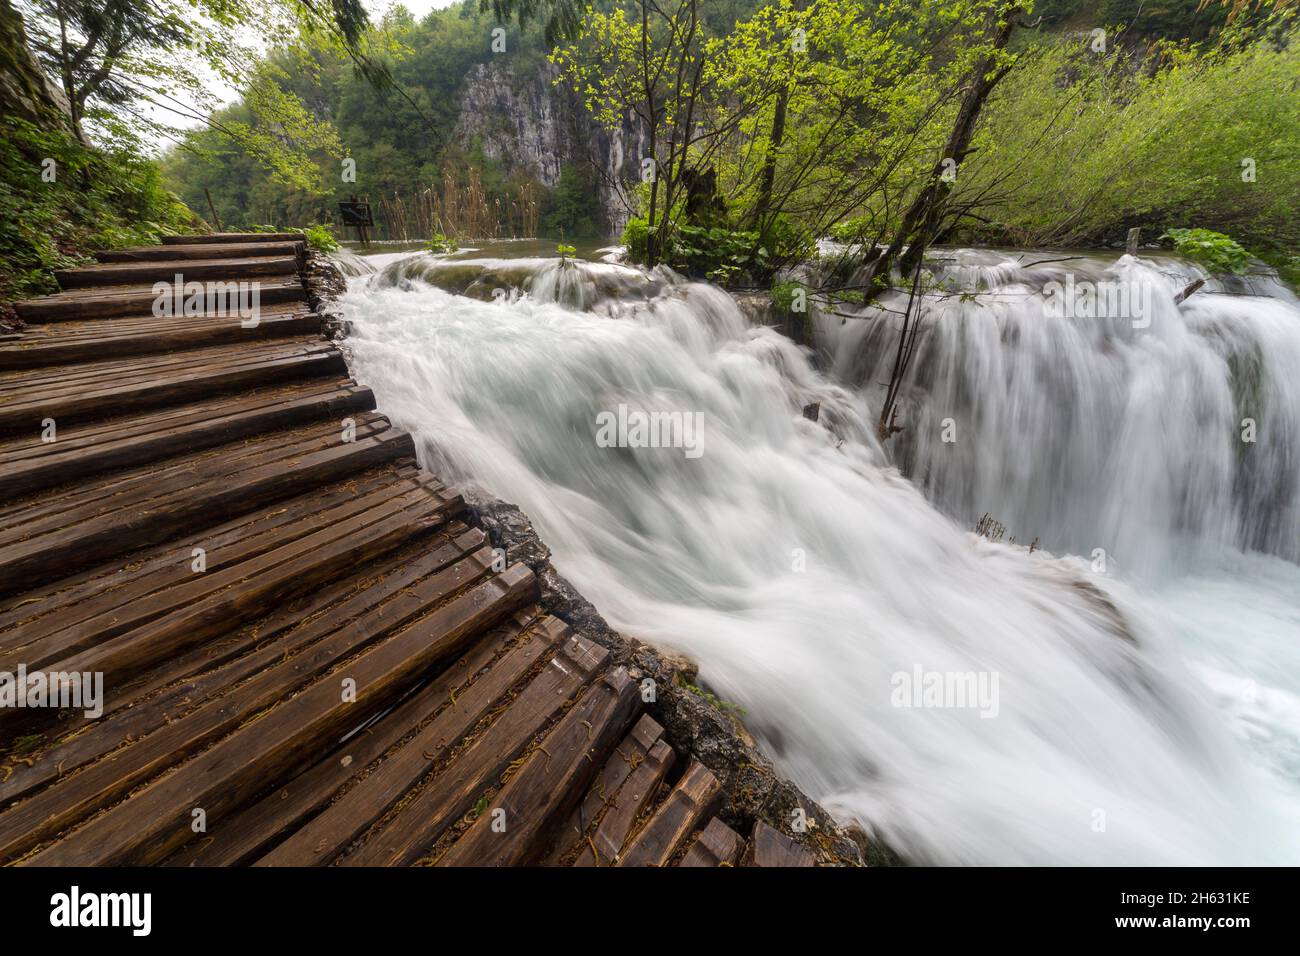 una pasarela de madera rodeada de árboles, cascadas y vegetación en el parque nacional plitvice, croacia Foto de stock